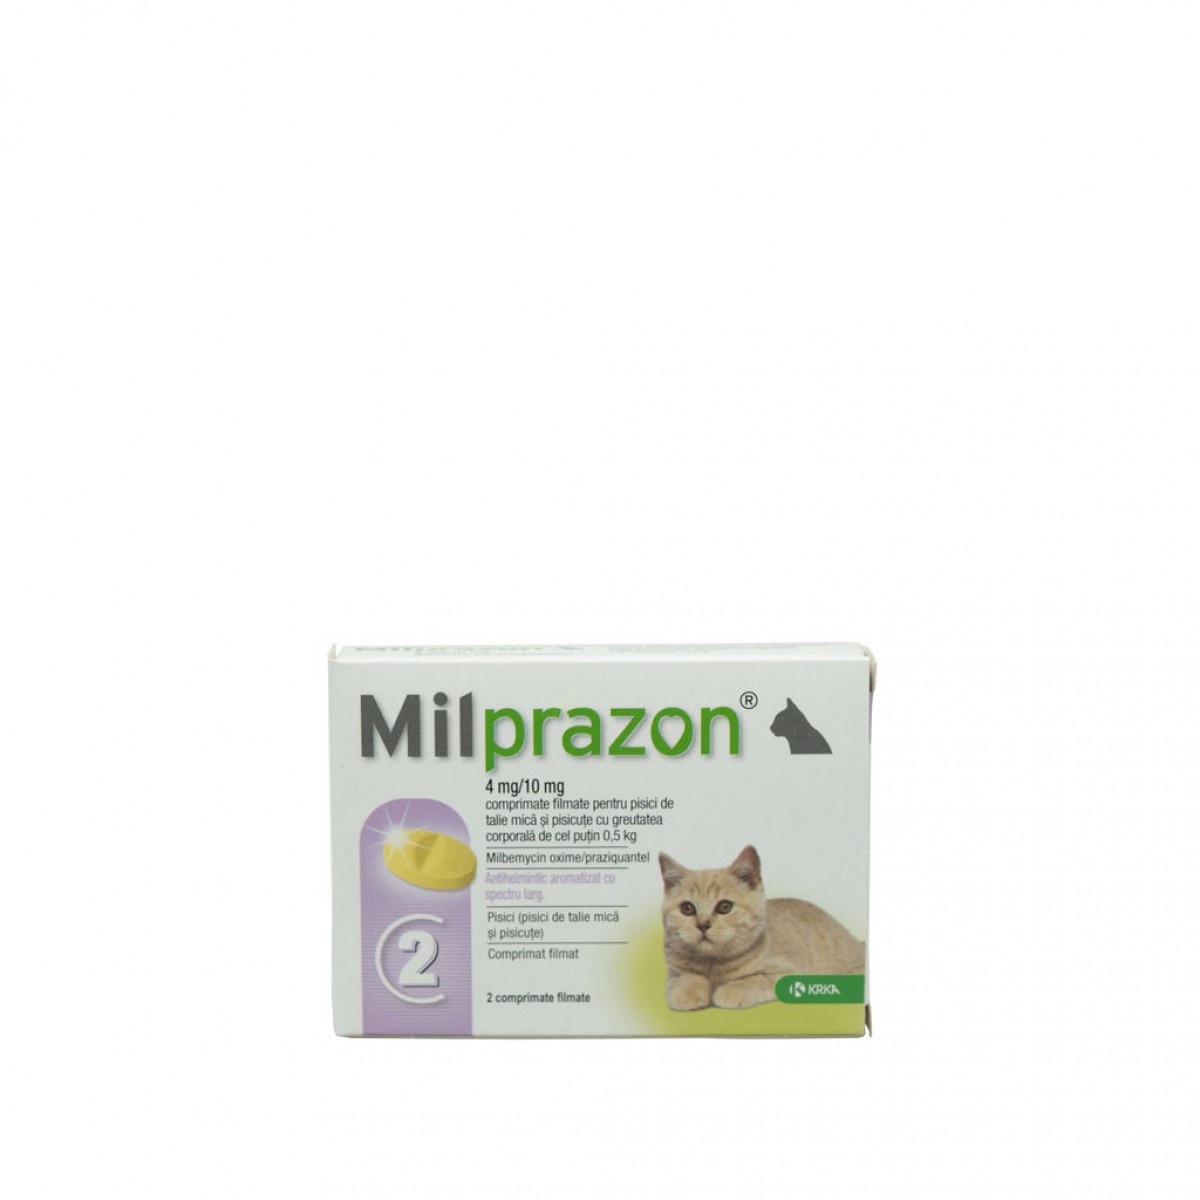 Milprazon pentru pisici de până la 2kg, 2 tablete antiparazitare, Antiparazitare interne, Antiparazitare, Pisici 